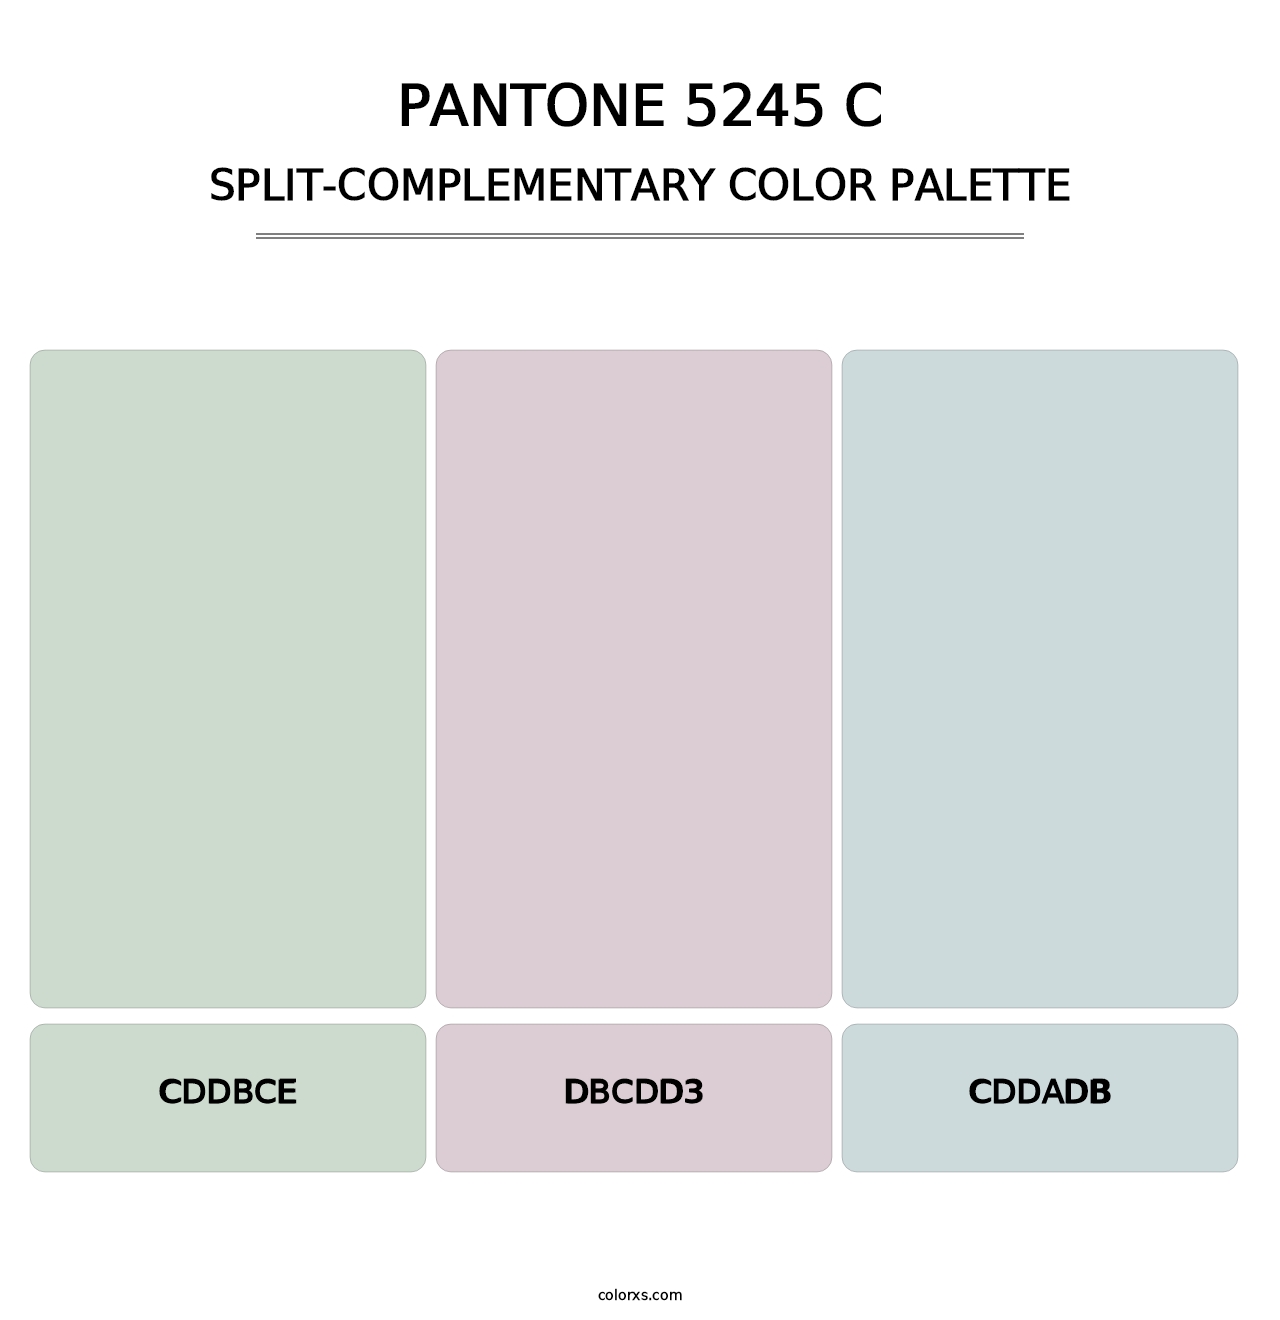 PANTONE 5245 C - Split-Complementary Color Palette